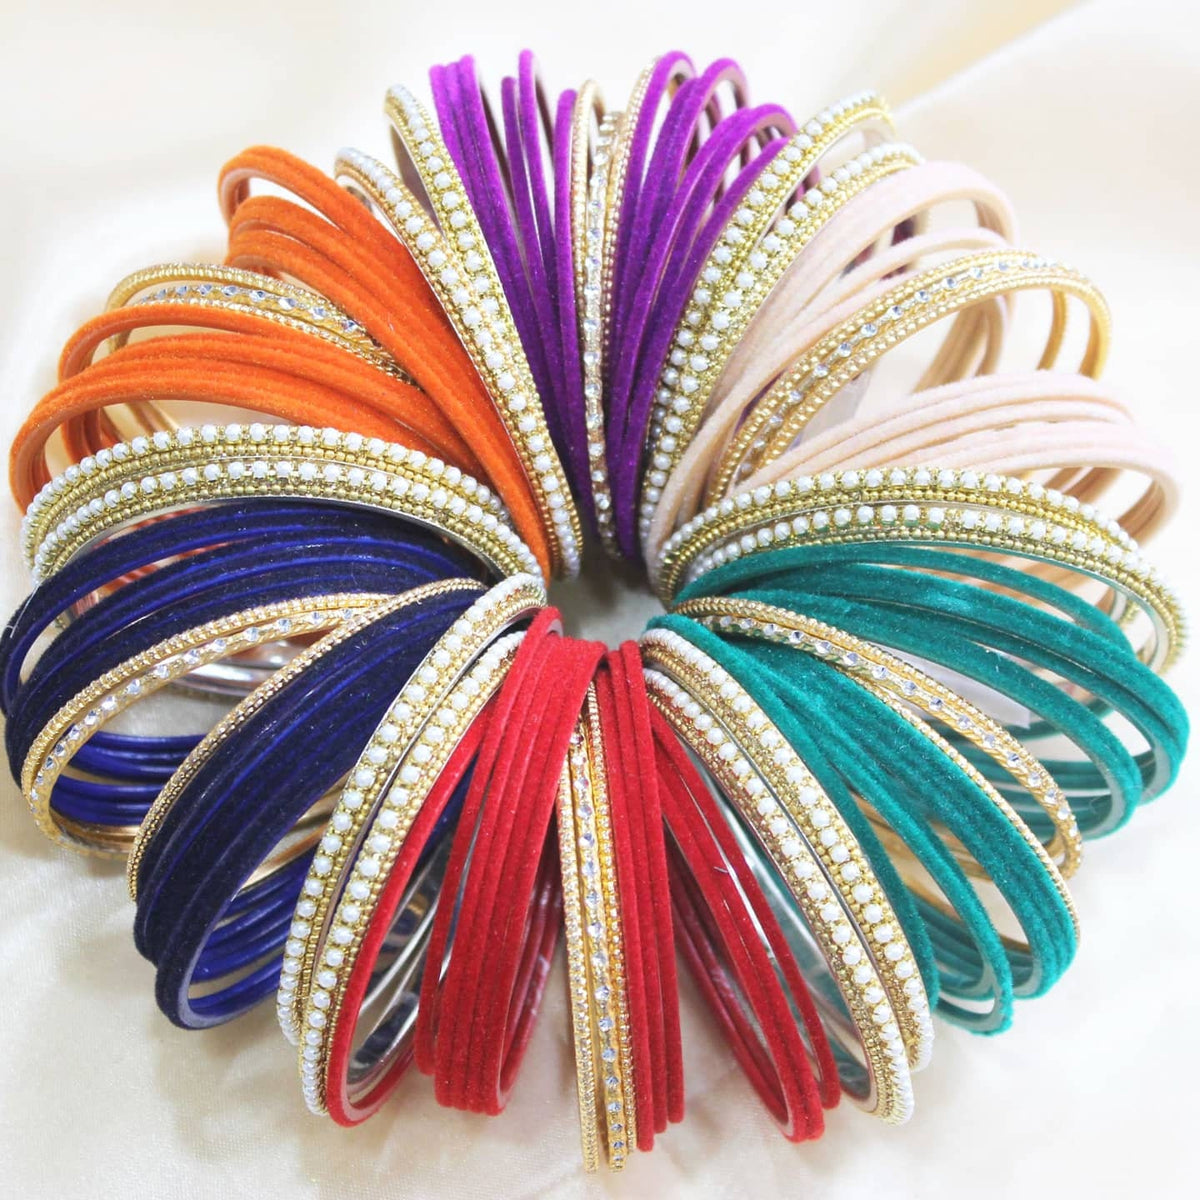 Indian Bangles Set / Bridal Bangles Set / Indian Jewelry / Bridal Bangles / Traditional Bangles / Festive Colorful Bangles Set for Women